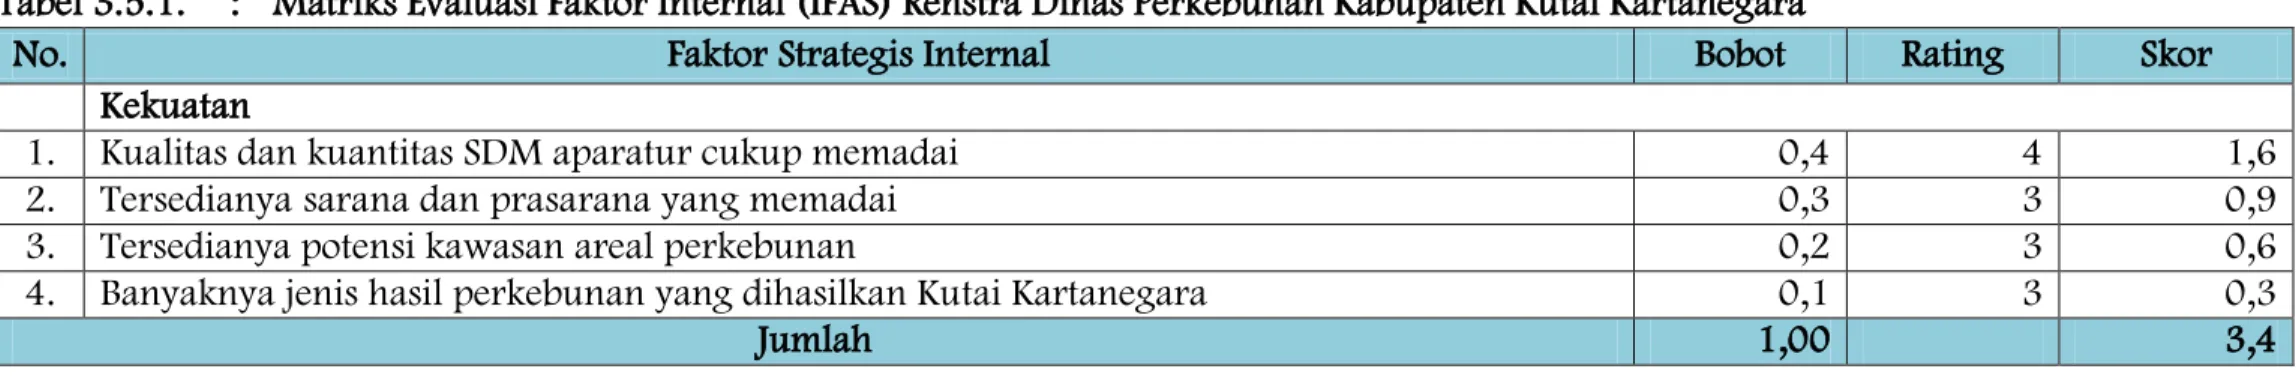 Tabel 3.5.1.  :  Matriks Evaluasi Faktor Internal (IFAS) Renstra Dinas Perkebunan Kabupaten Kutai Kartanegara 